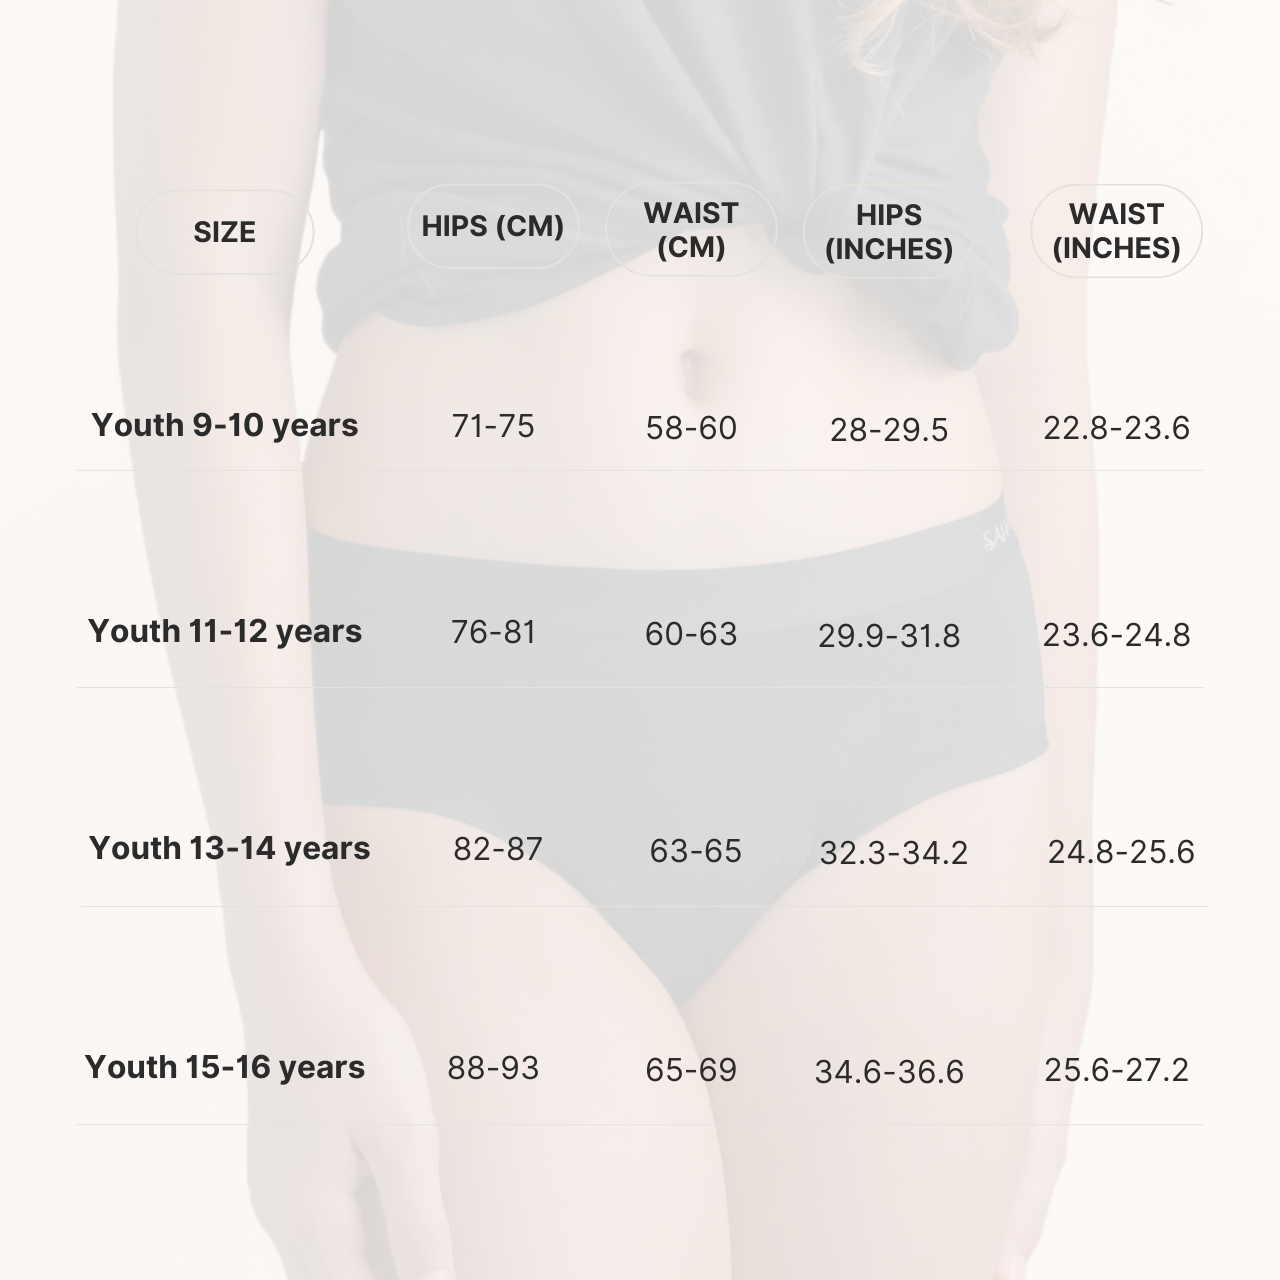 ملابس داخلية مقاومة للدورة الشهرية من صحارى للمراهقات، قدرة امتصاص ثقيلة - للأعمار من 11 إلى 12 سنة